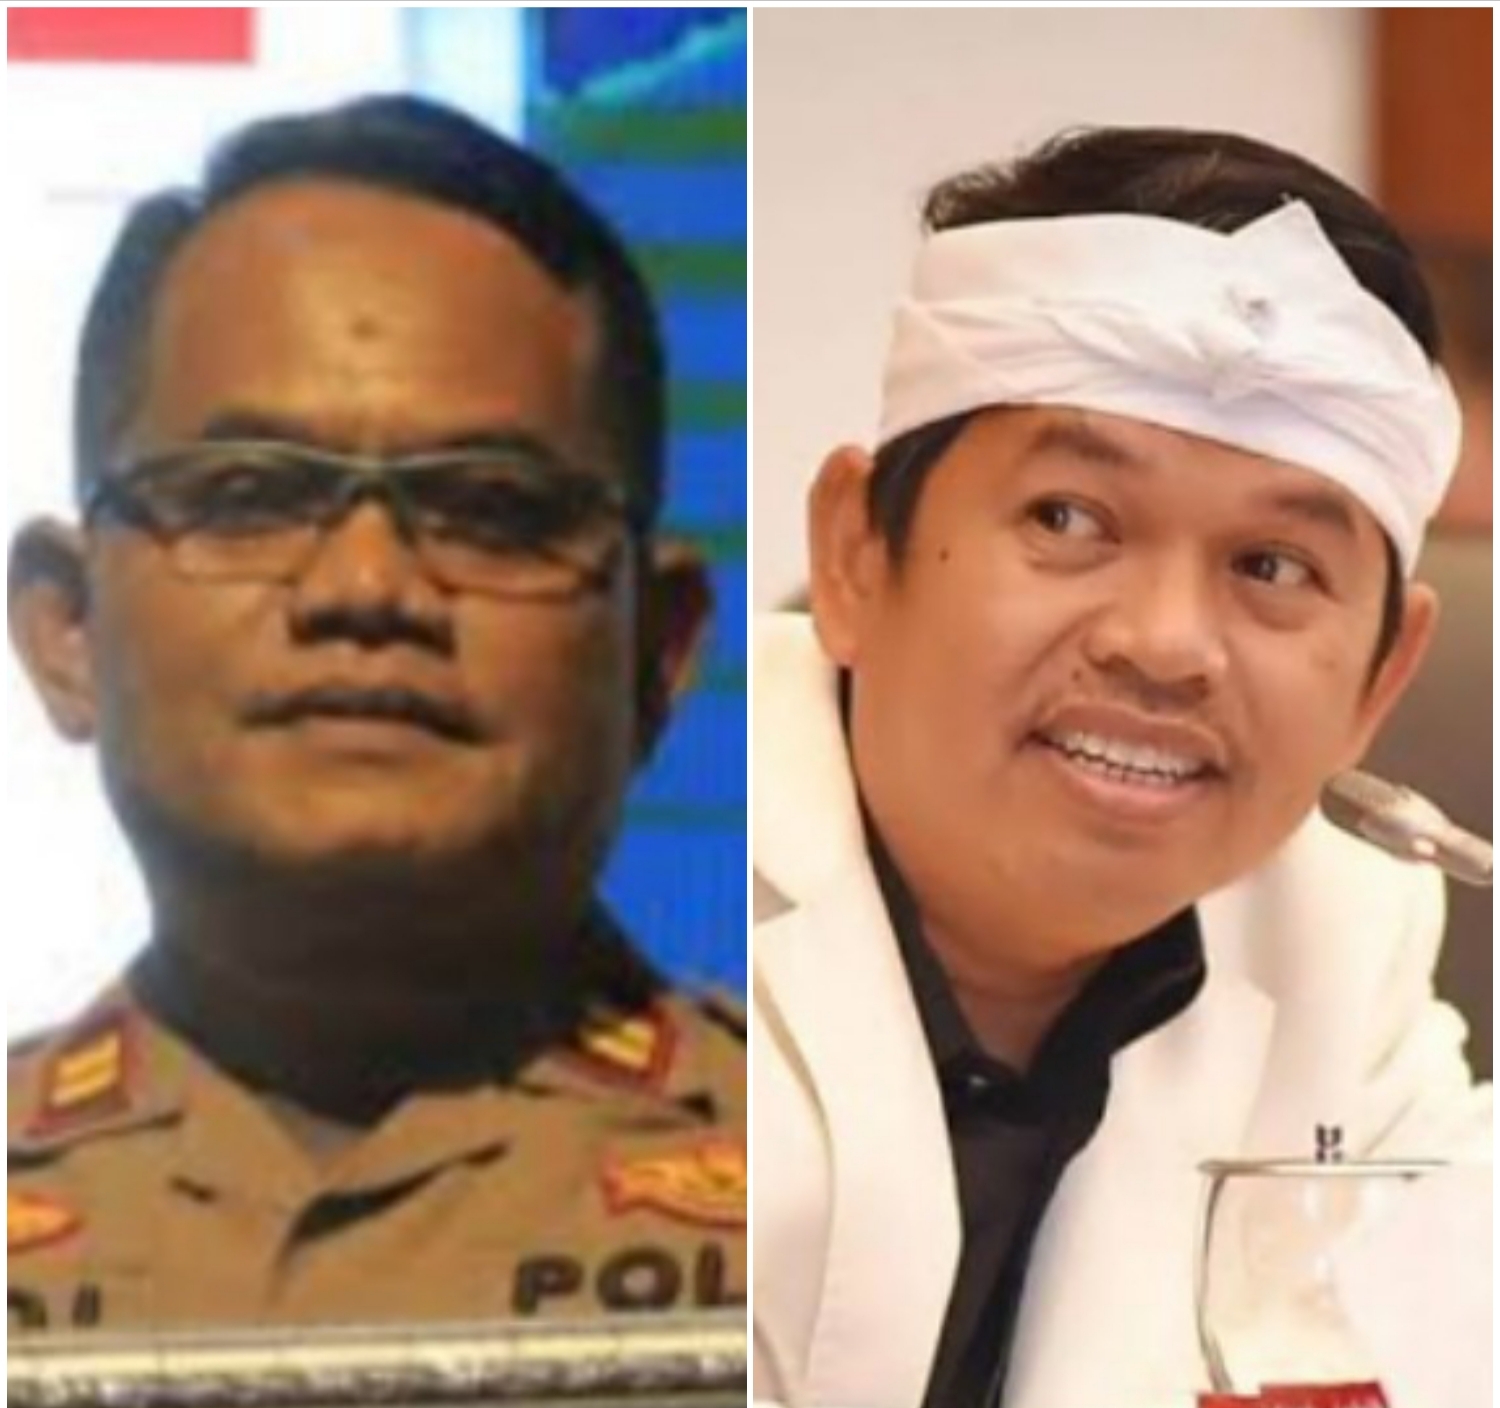 Prediksi Hotman Paris Ada Babak Baru 'Semakin Seru' di Kasus Vina Cirebon Terbukti, Ditandai Iptu Rudiana Somasi Dedi Mulyadi